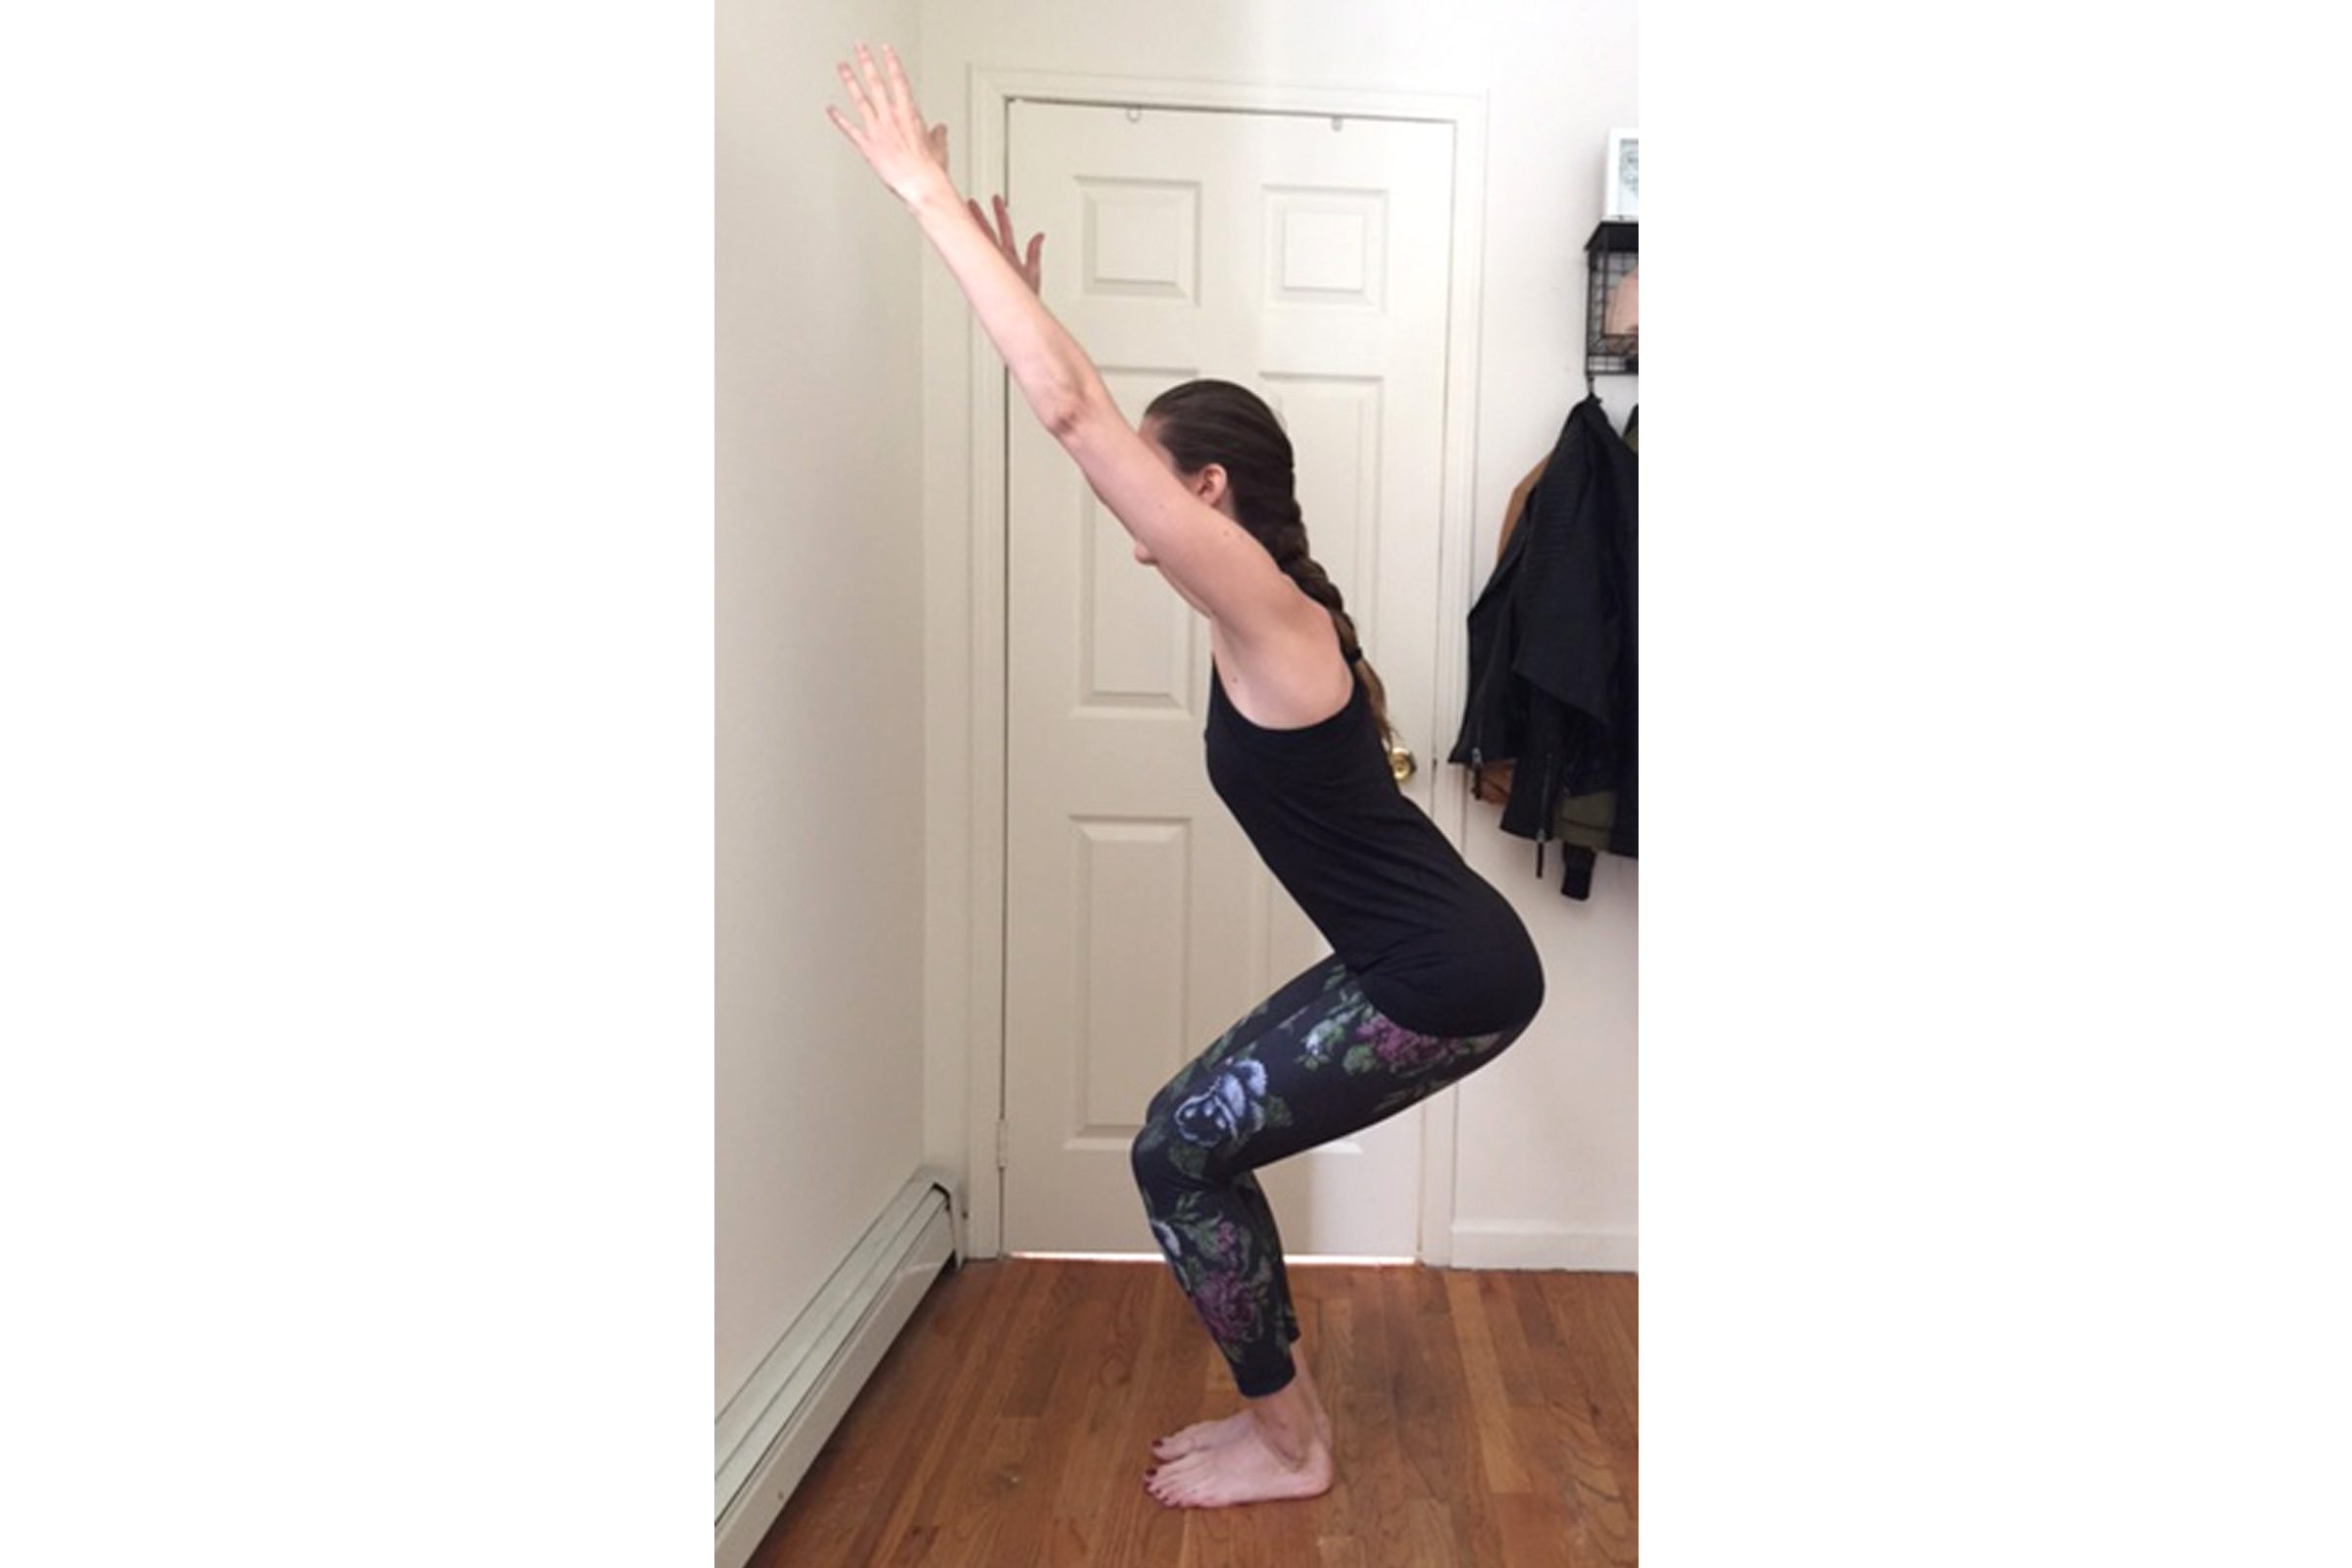 exercises for better balance